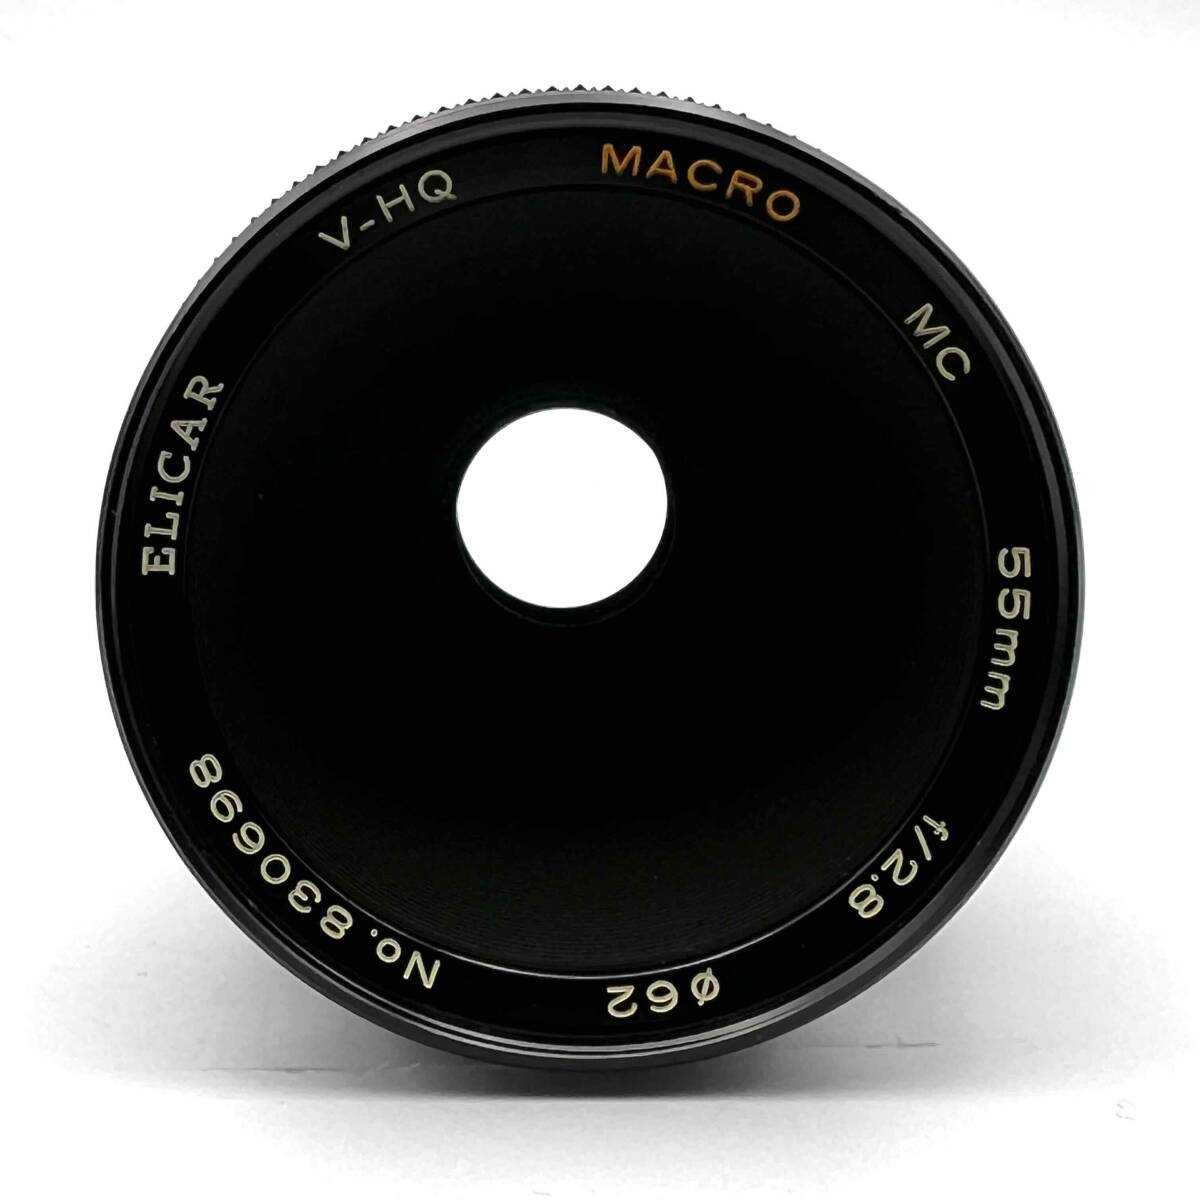 e licca ELICAR V-HQ MACRO MC 55mm F2.8 MACRO одиночный подпалина пункт линзы macro линзы однообъективный камера для ручной диапазон фокусировки MF текущее состояние товар 